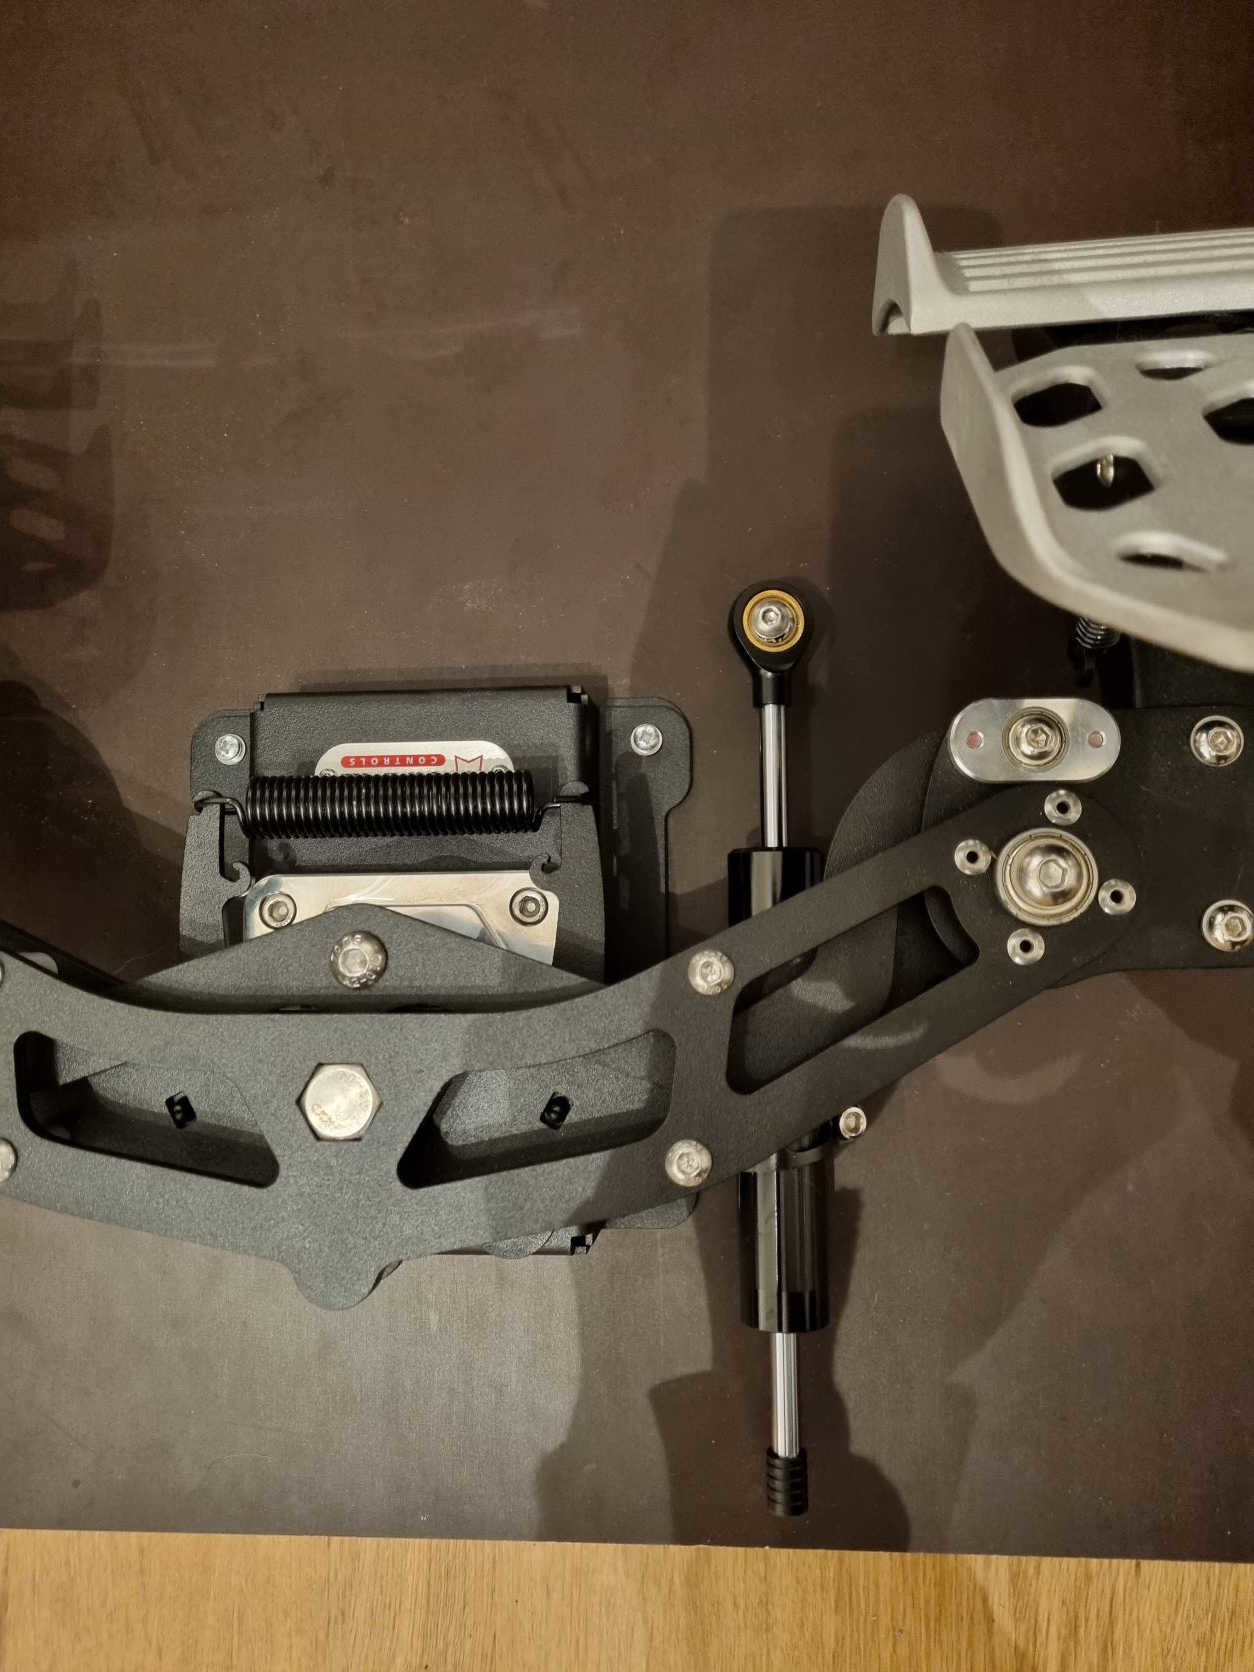 Virpil Rudder Pedals Dampener Mod - VIRPIL Controls - ED Forums